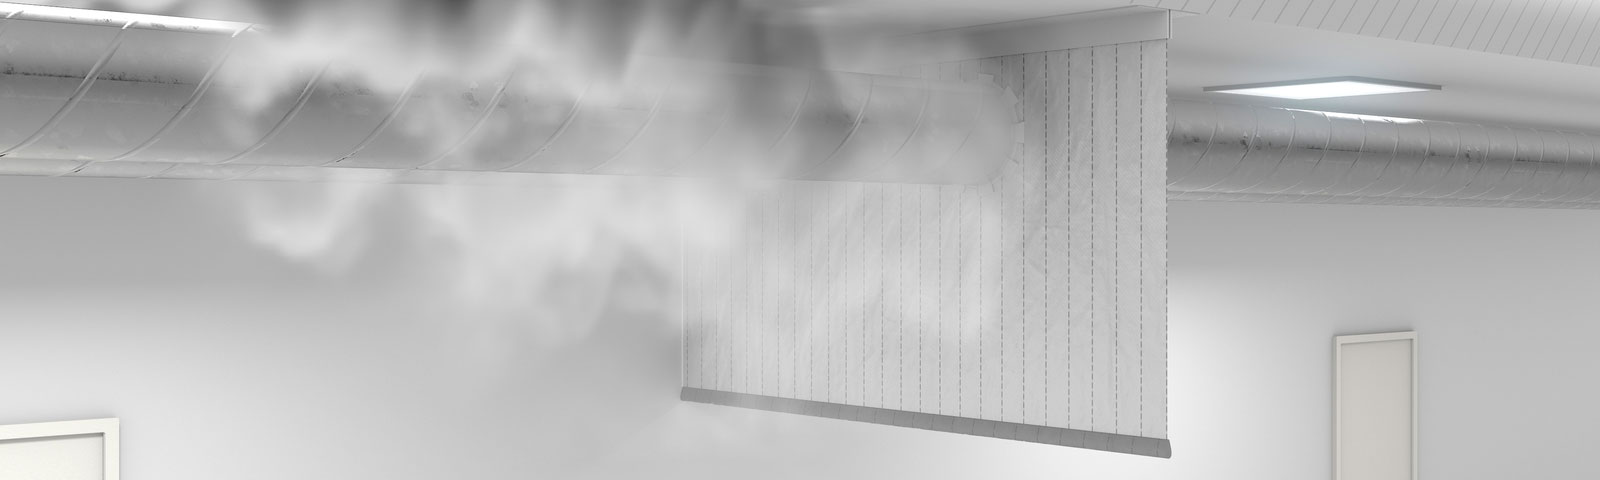 Imagem tipo mockup de funcionamento da cortina contra-fumaça